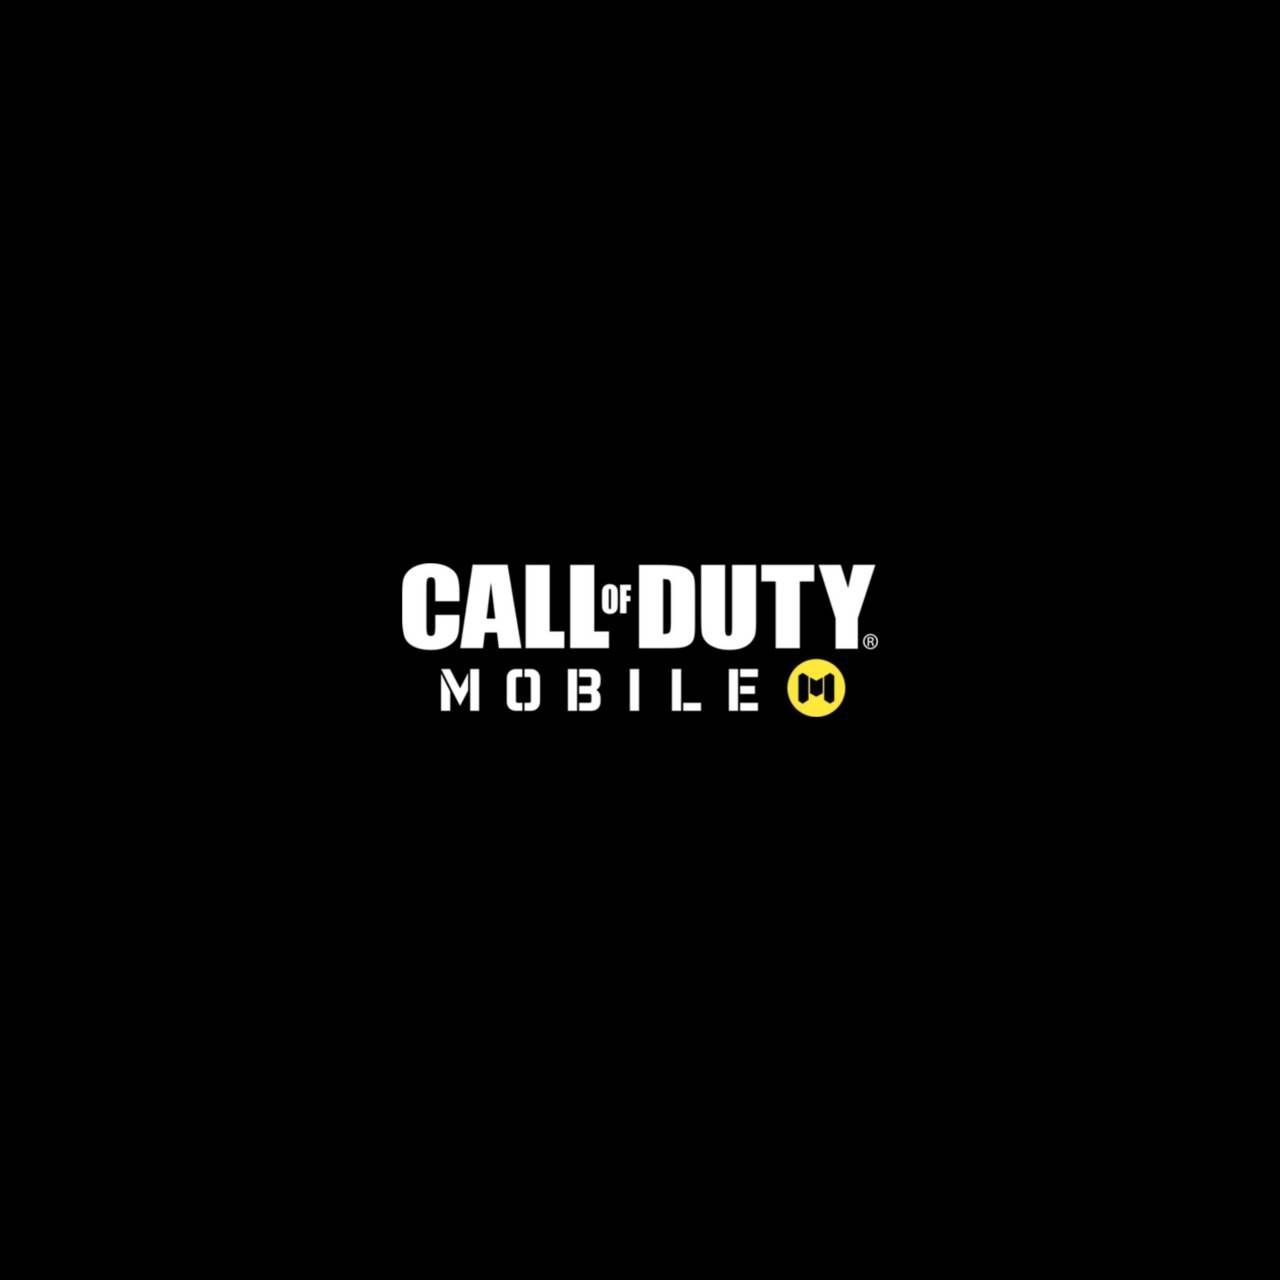 Call of Duty 4 Modern Warfare Logo Recreation by TiaanWarfare on DeviantArt